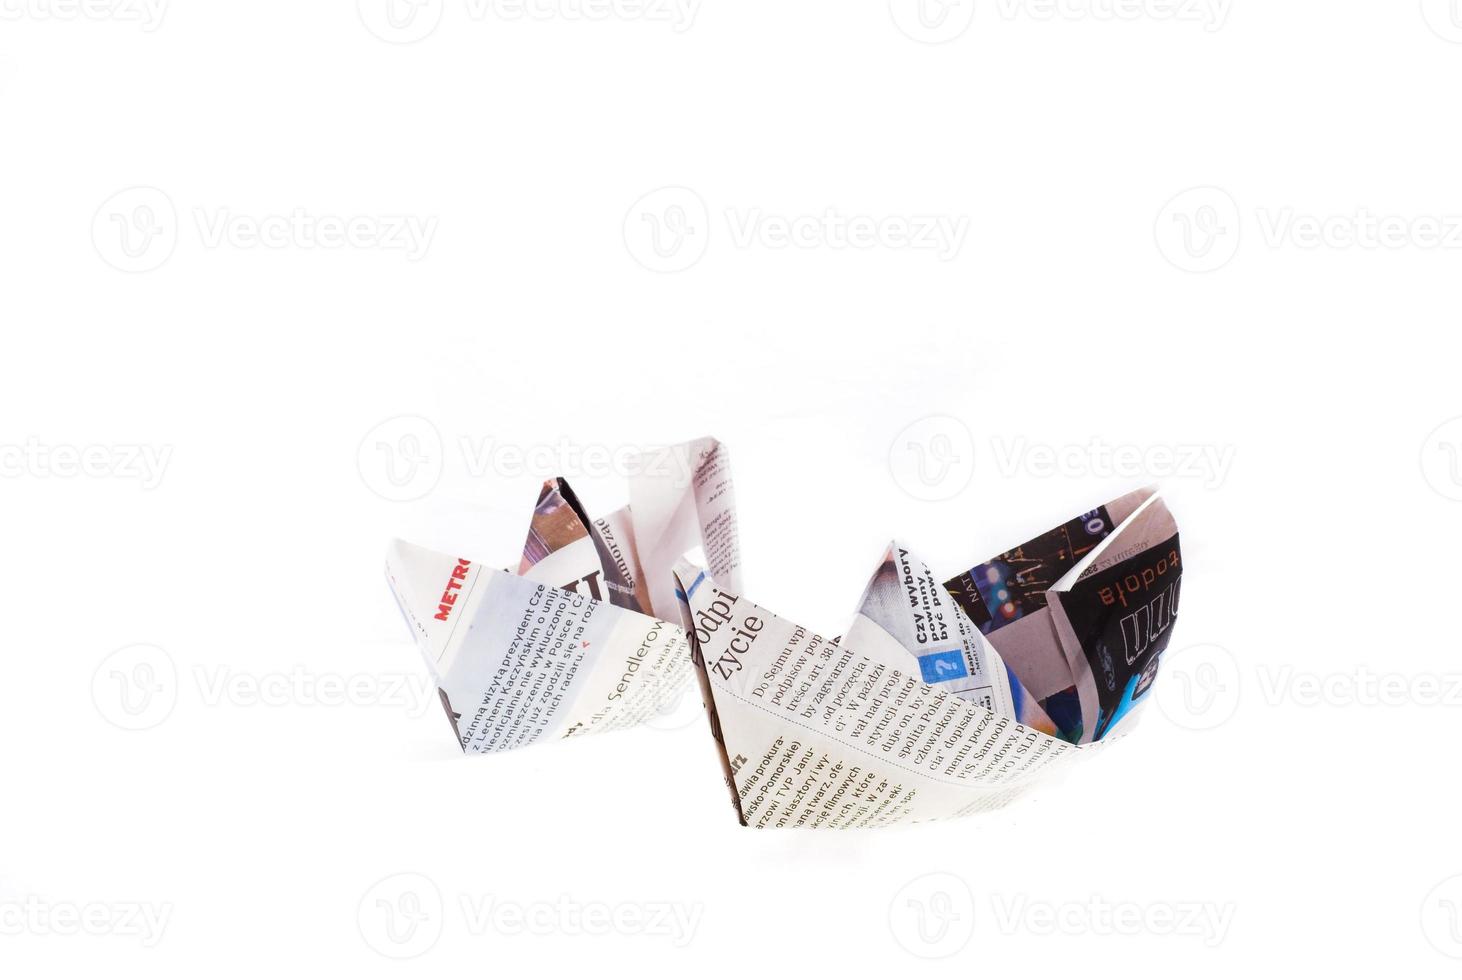 Origami Schiff von Zeitung auf Weiß Hintergrund foto